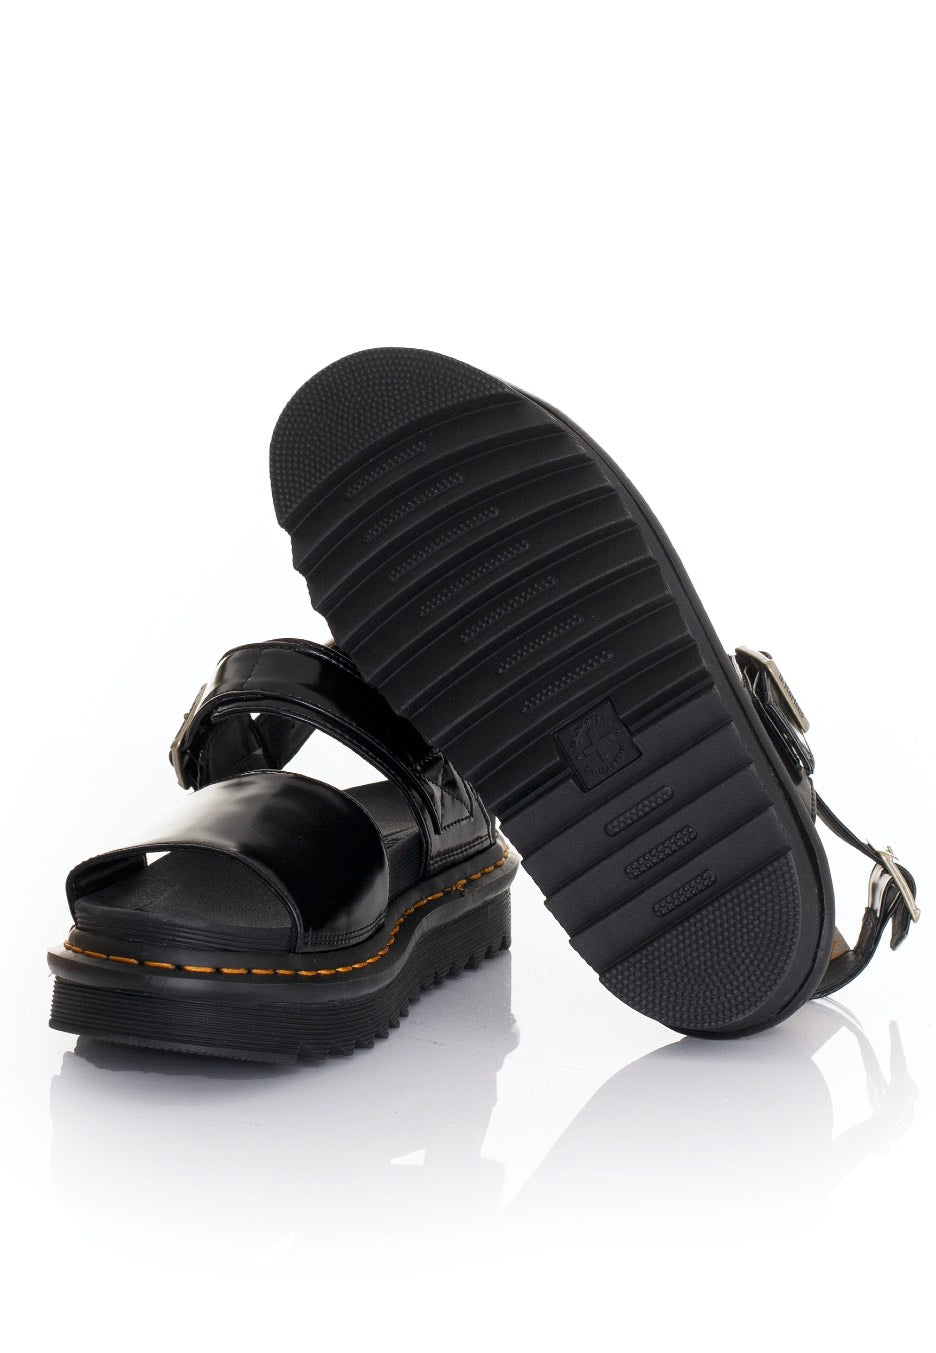 Dr. Martens - Vegan Voss Black Oxford - Girl Sandals